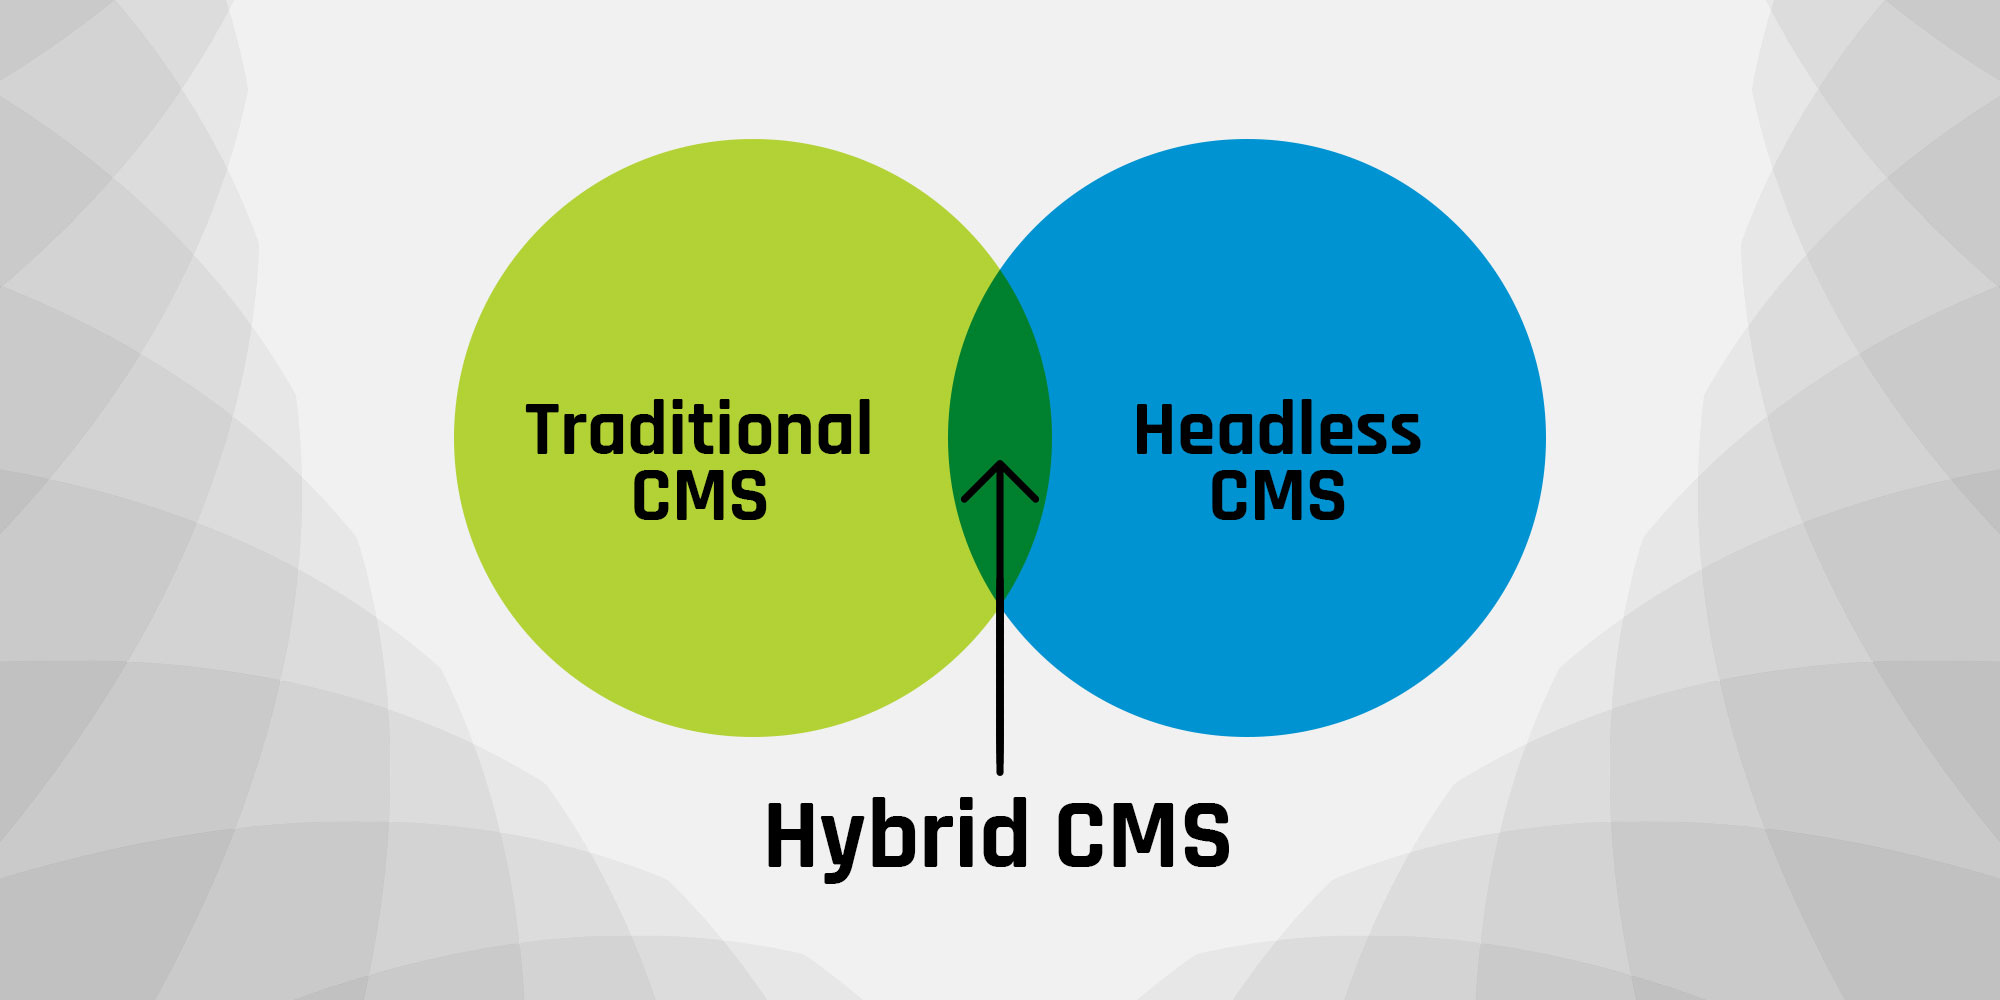 Hybrid CMS